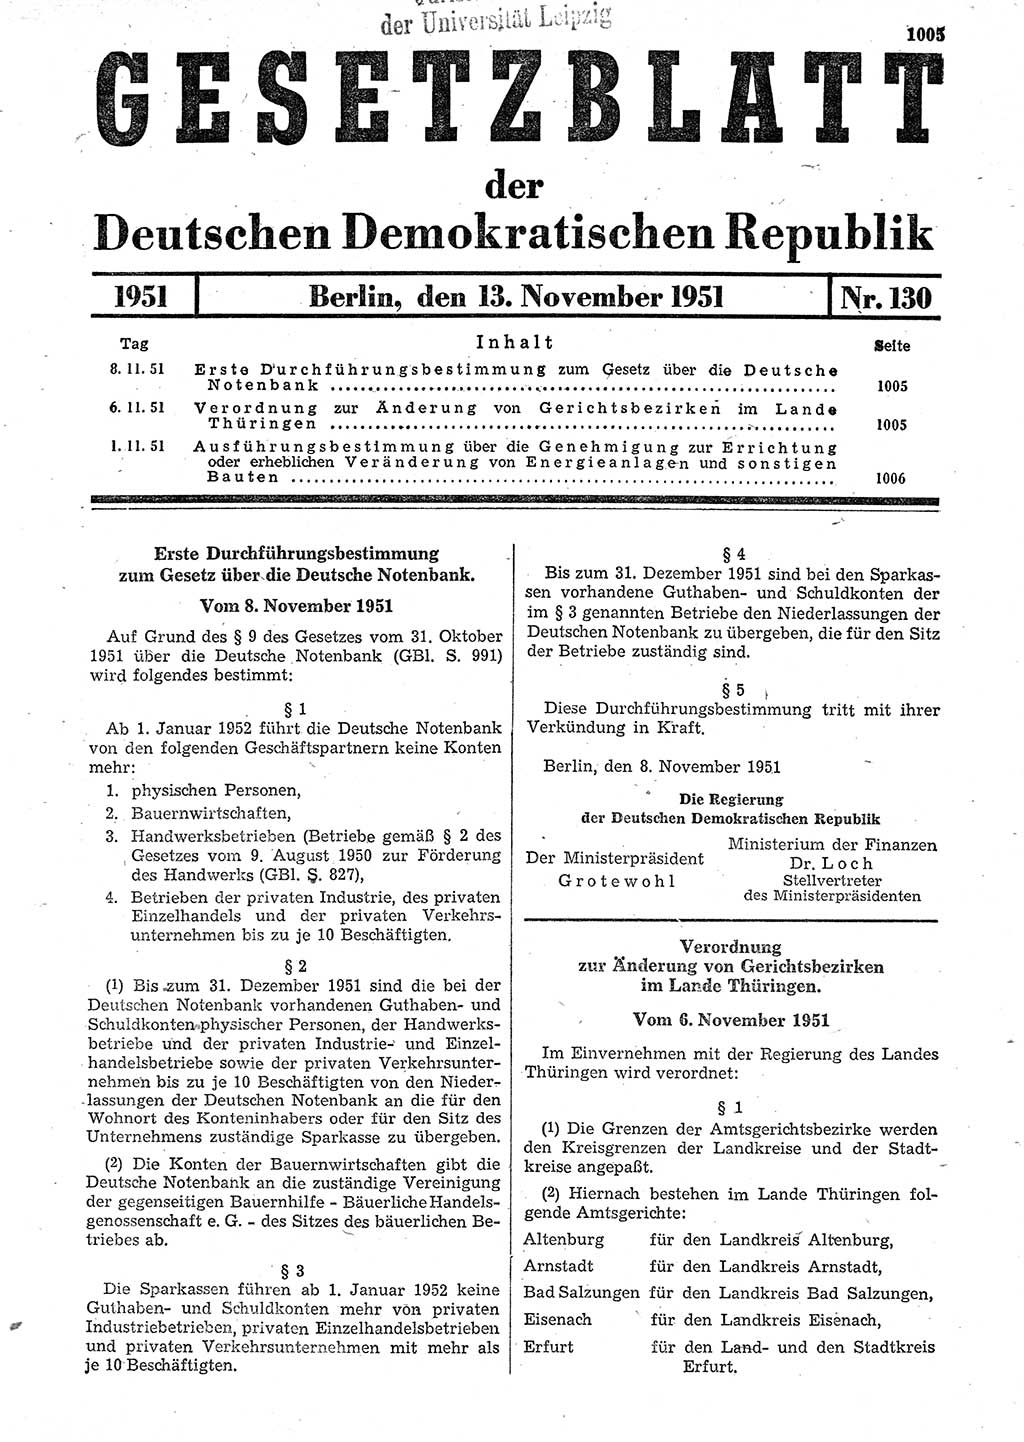 Gesetzblatt (GBl.) der Deutschen Demokratischen Republik (DDR) 1951, Seite 1005 (GBl. DDR 1951, S. 1005)